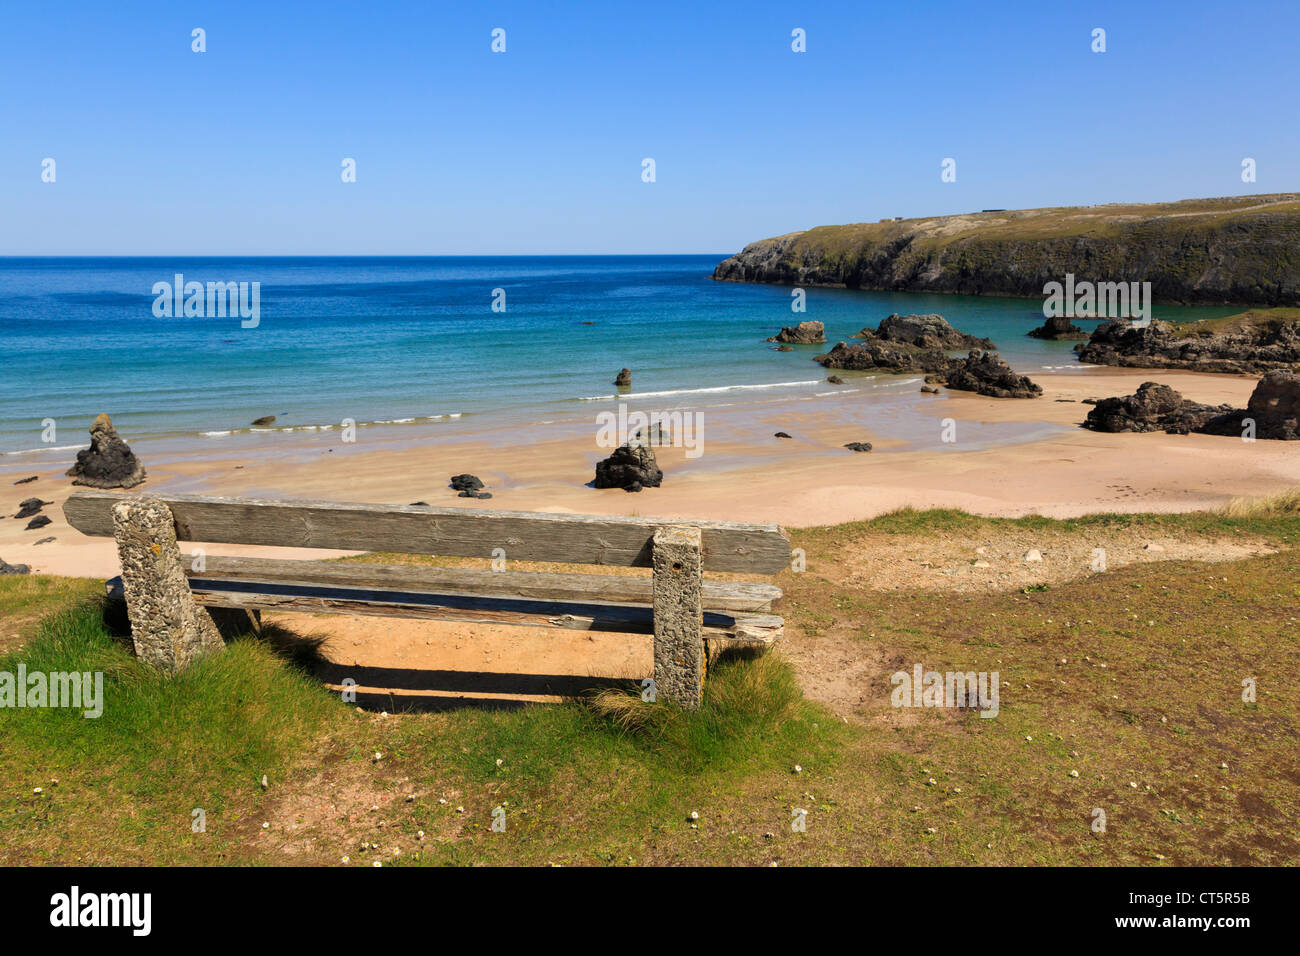 Sitzbank mit Blick auf Strand von goldenen Sandstrand und das türkisblaue Meer an malerischen Nordwestküste Sango Bay Durness Sutherland Schottland, Vereinigtes Königreich Stockfoto